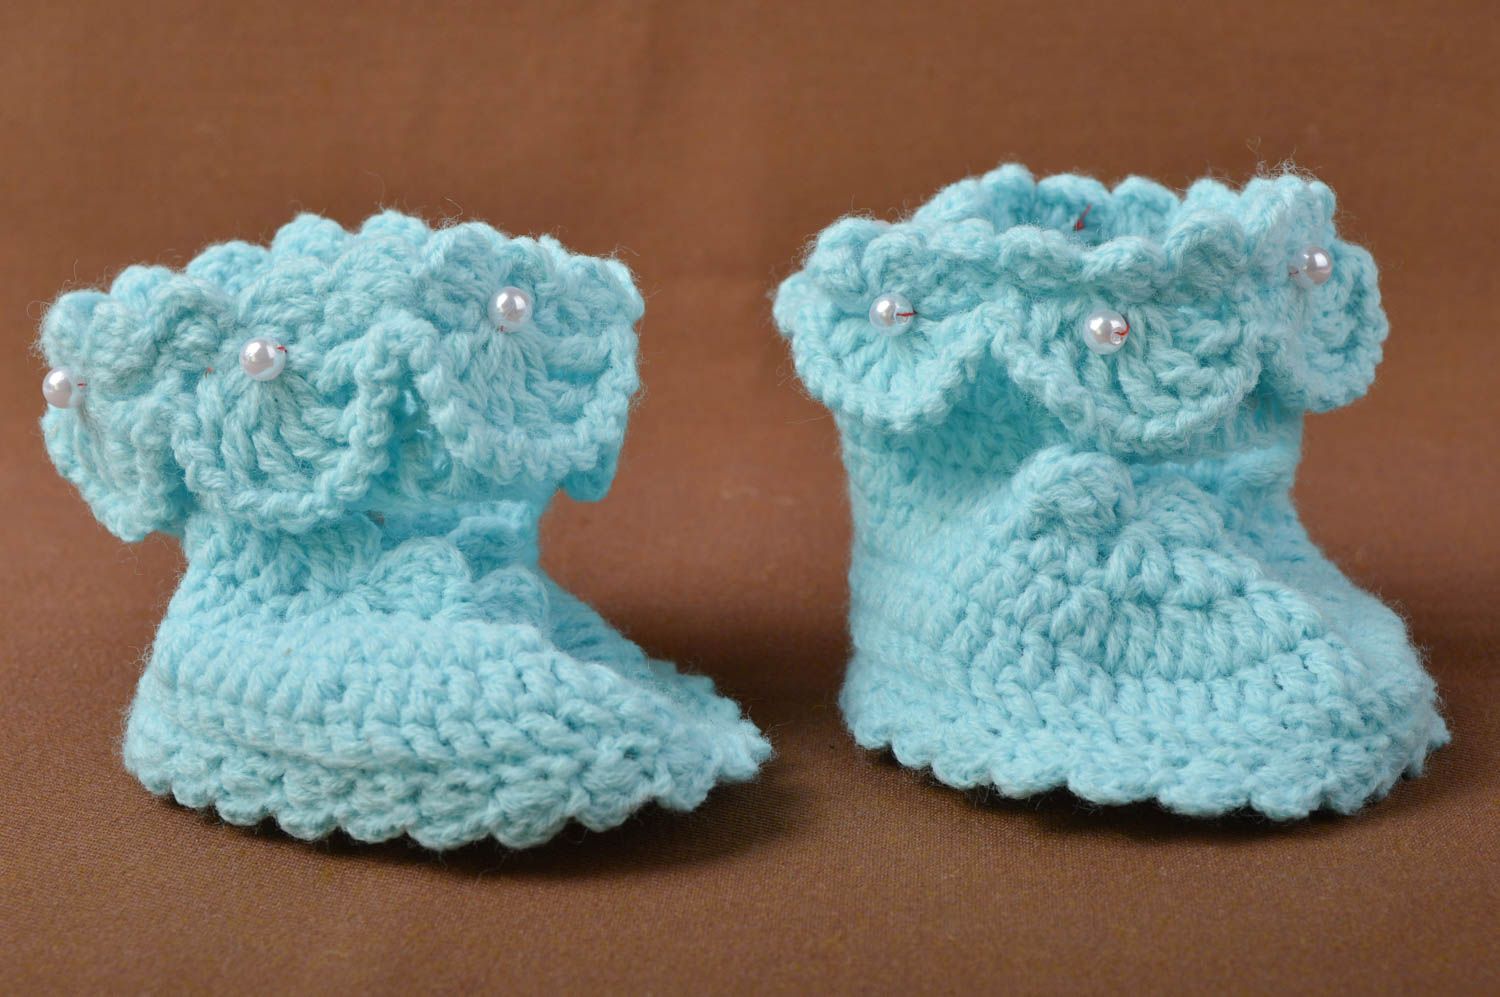 Crochet socks crochet booties for babies booties for newborns unusual booties photo 1